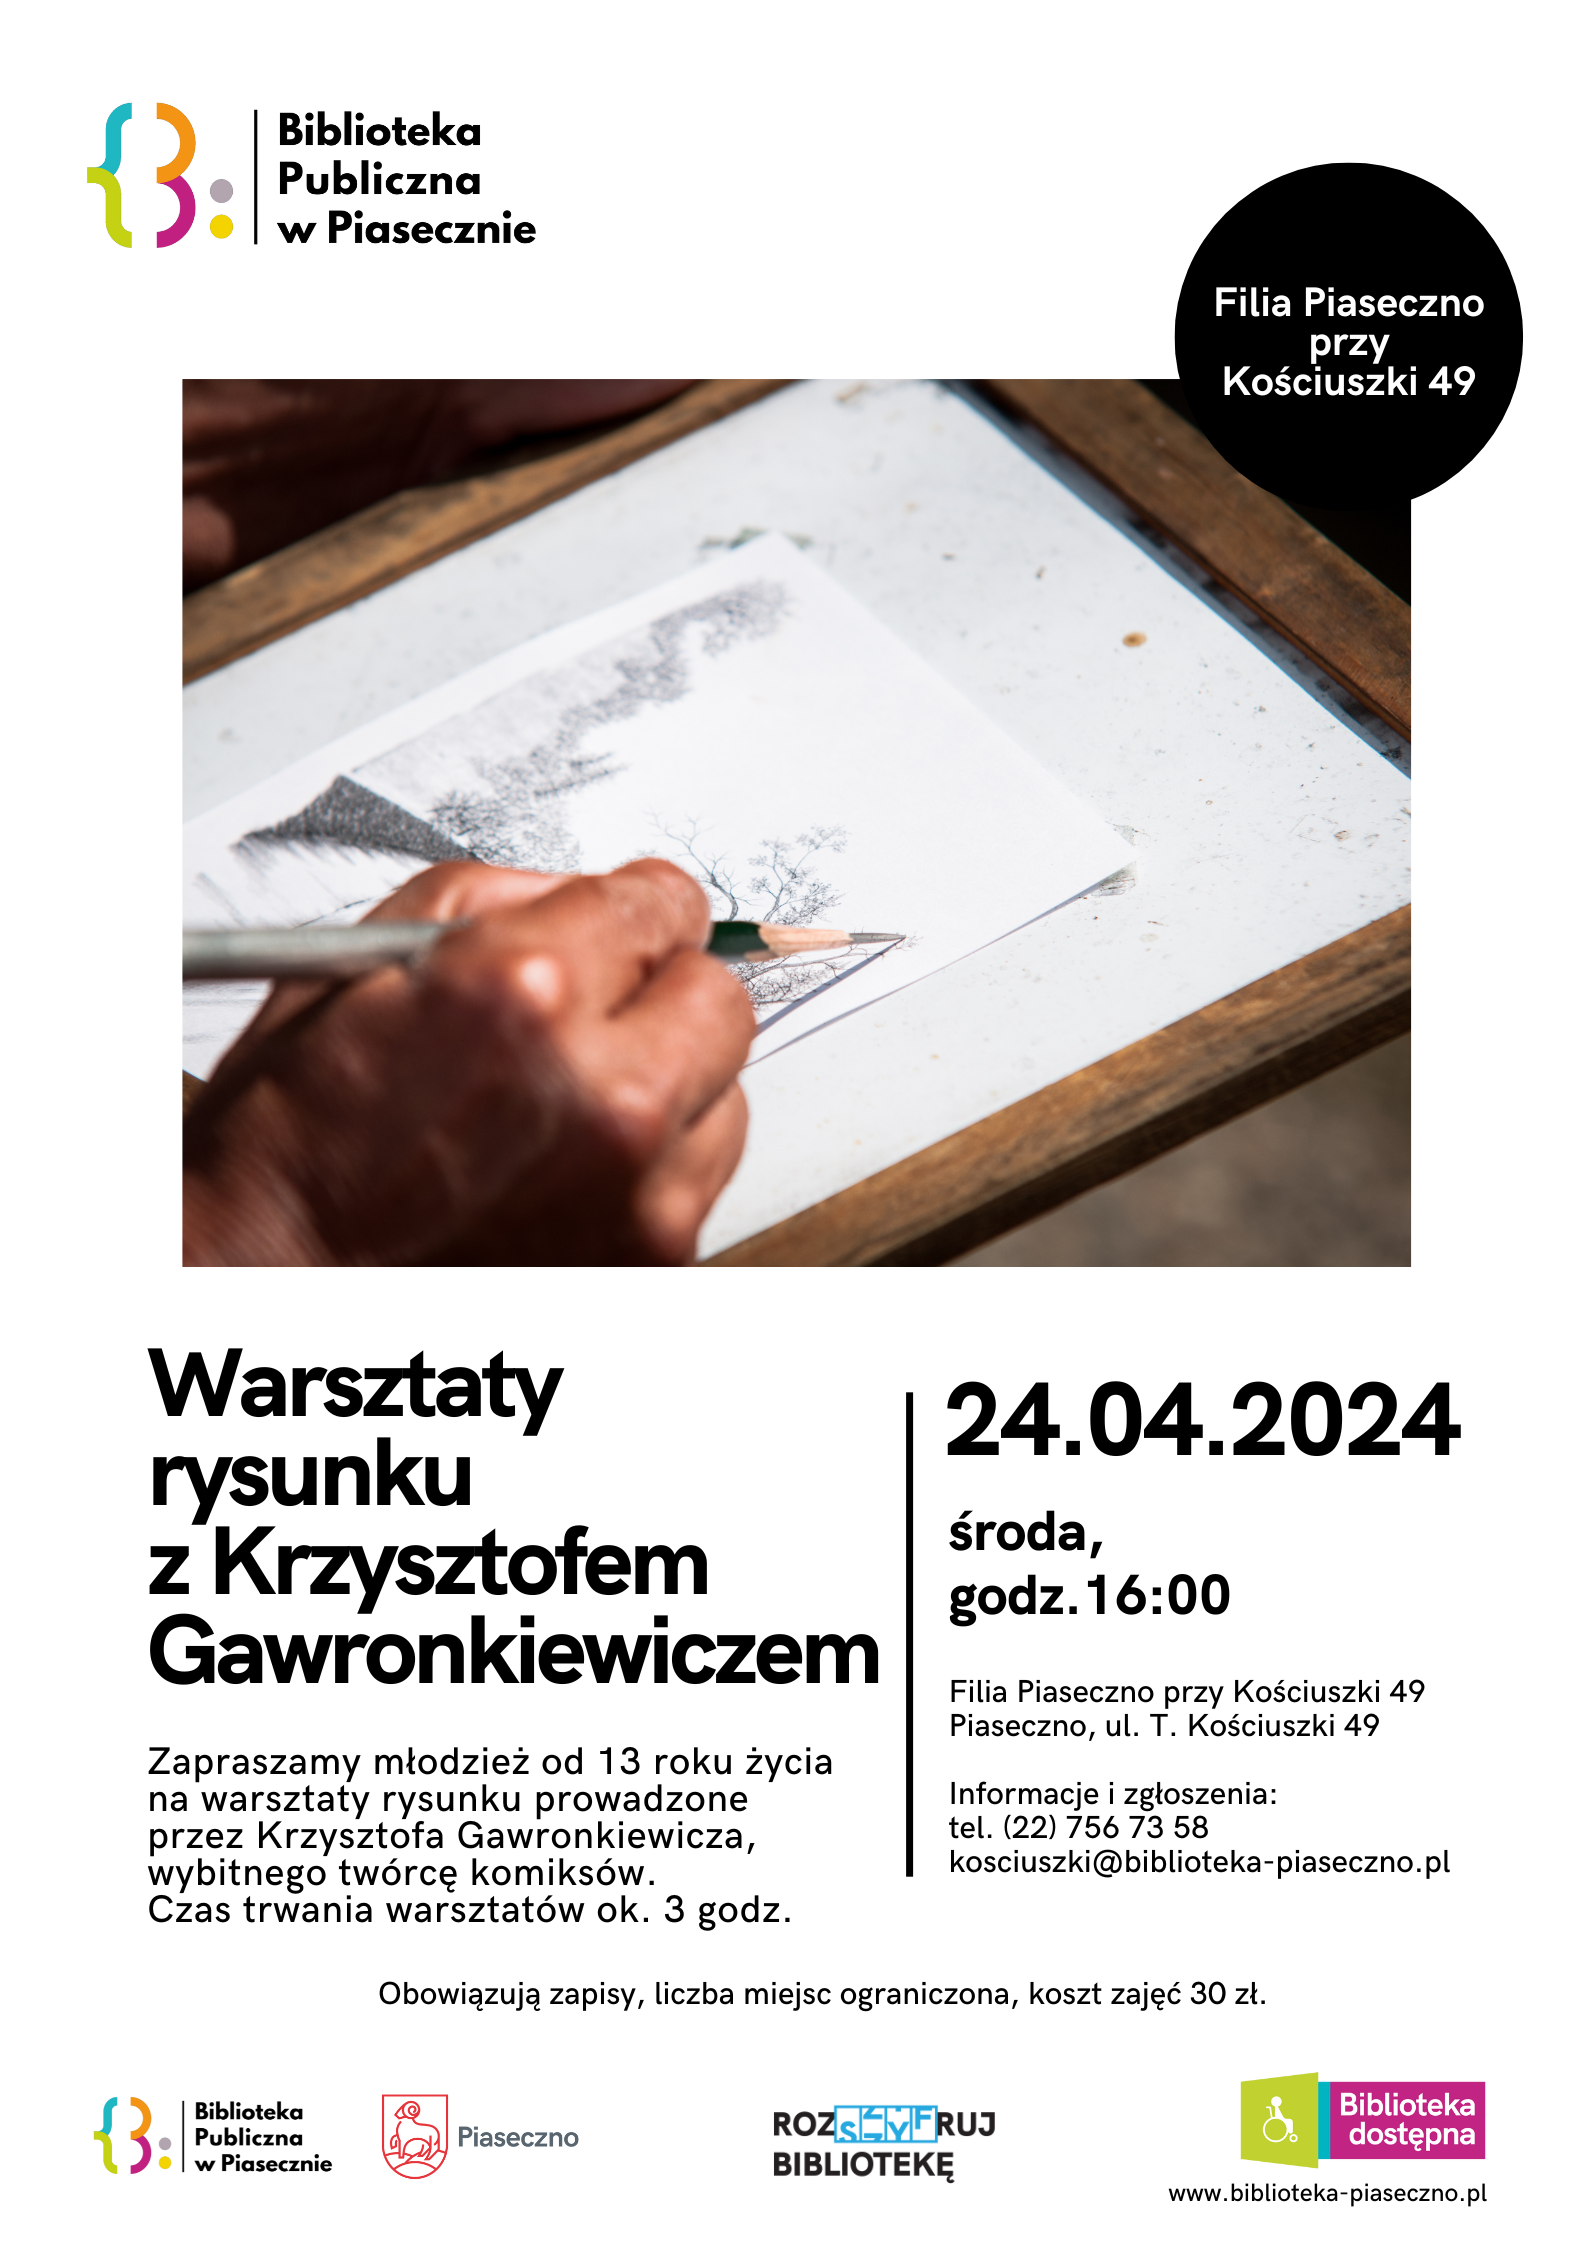 Plakat promujący warsztaty rysunku prowadzone przez Krzysztofa Gawronkiewicza